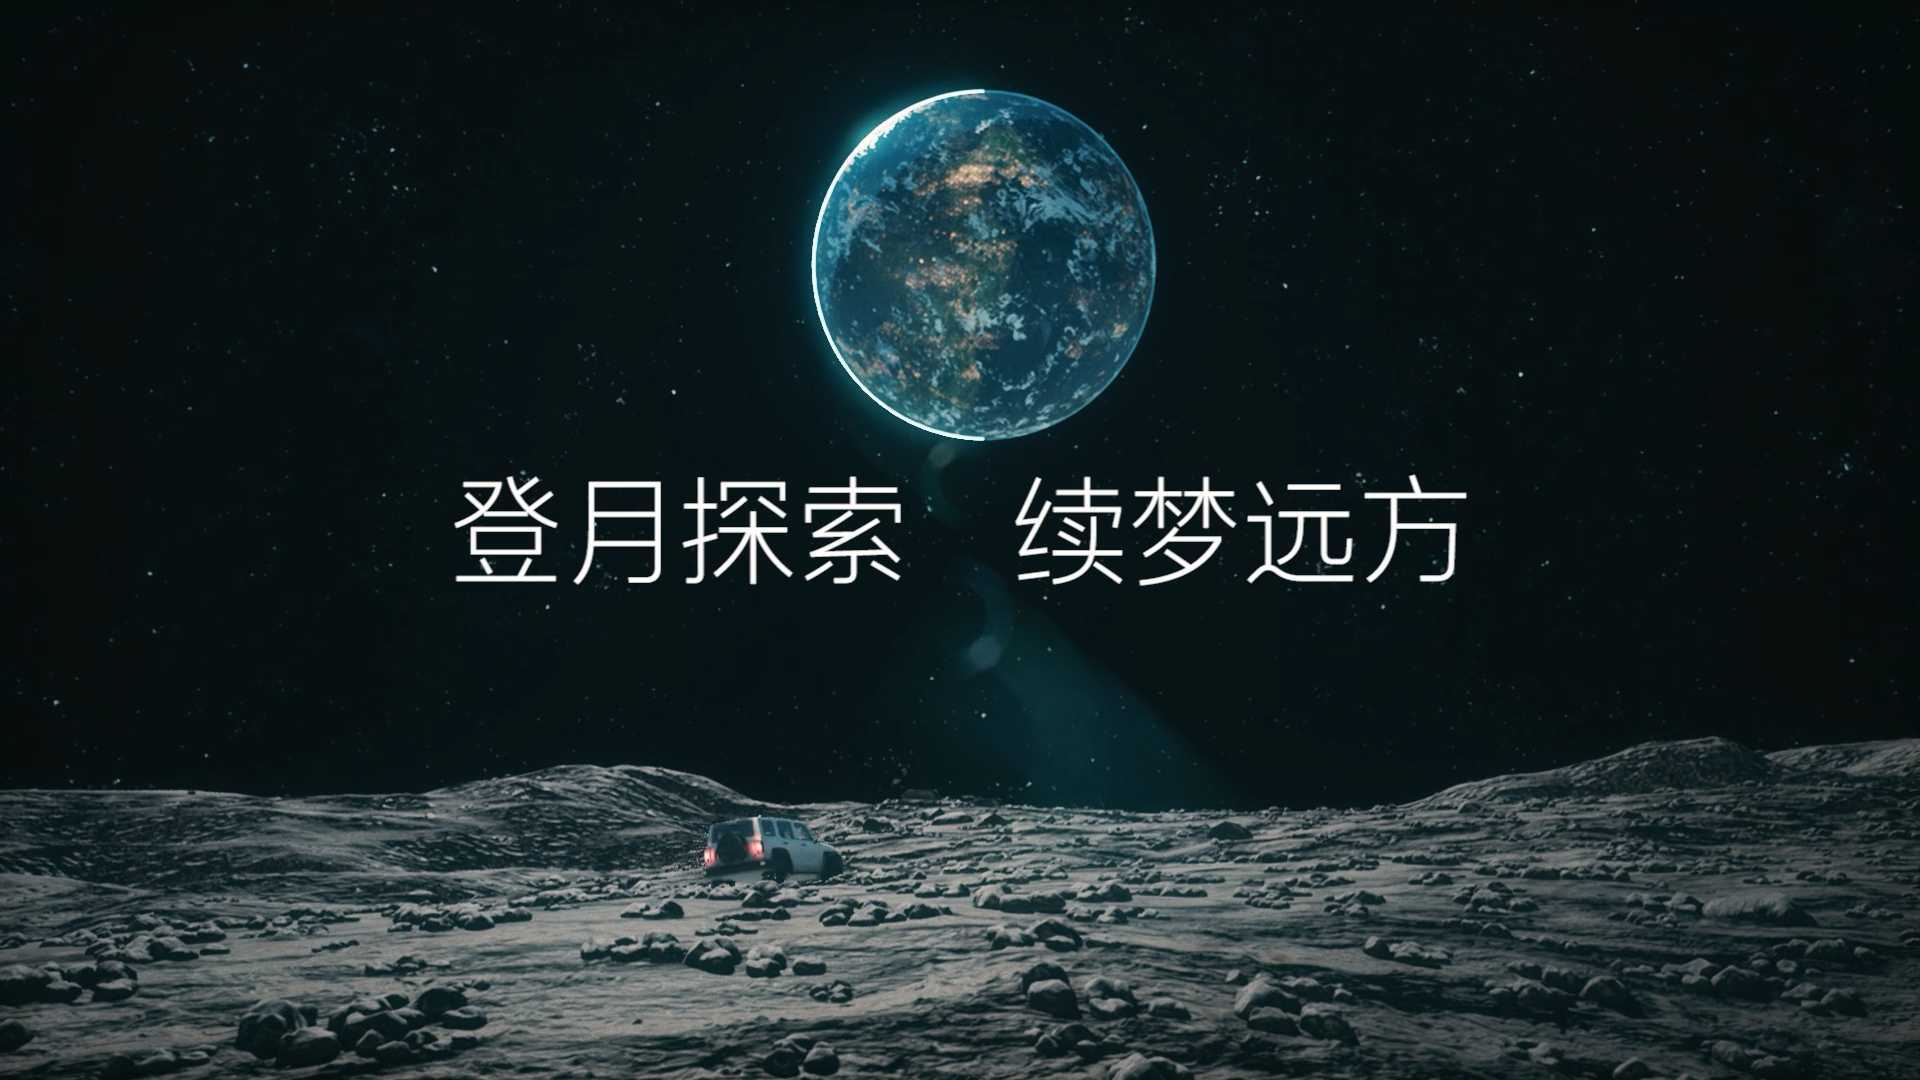 纯UE制作月球旅行短片 | 登月探索 续梦远方【Tank】